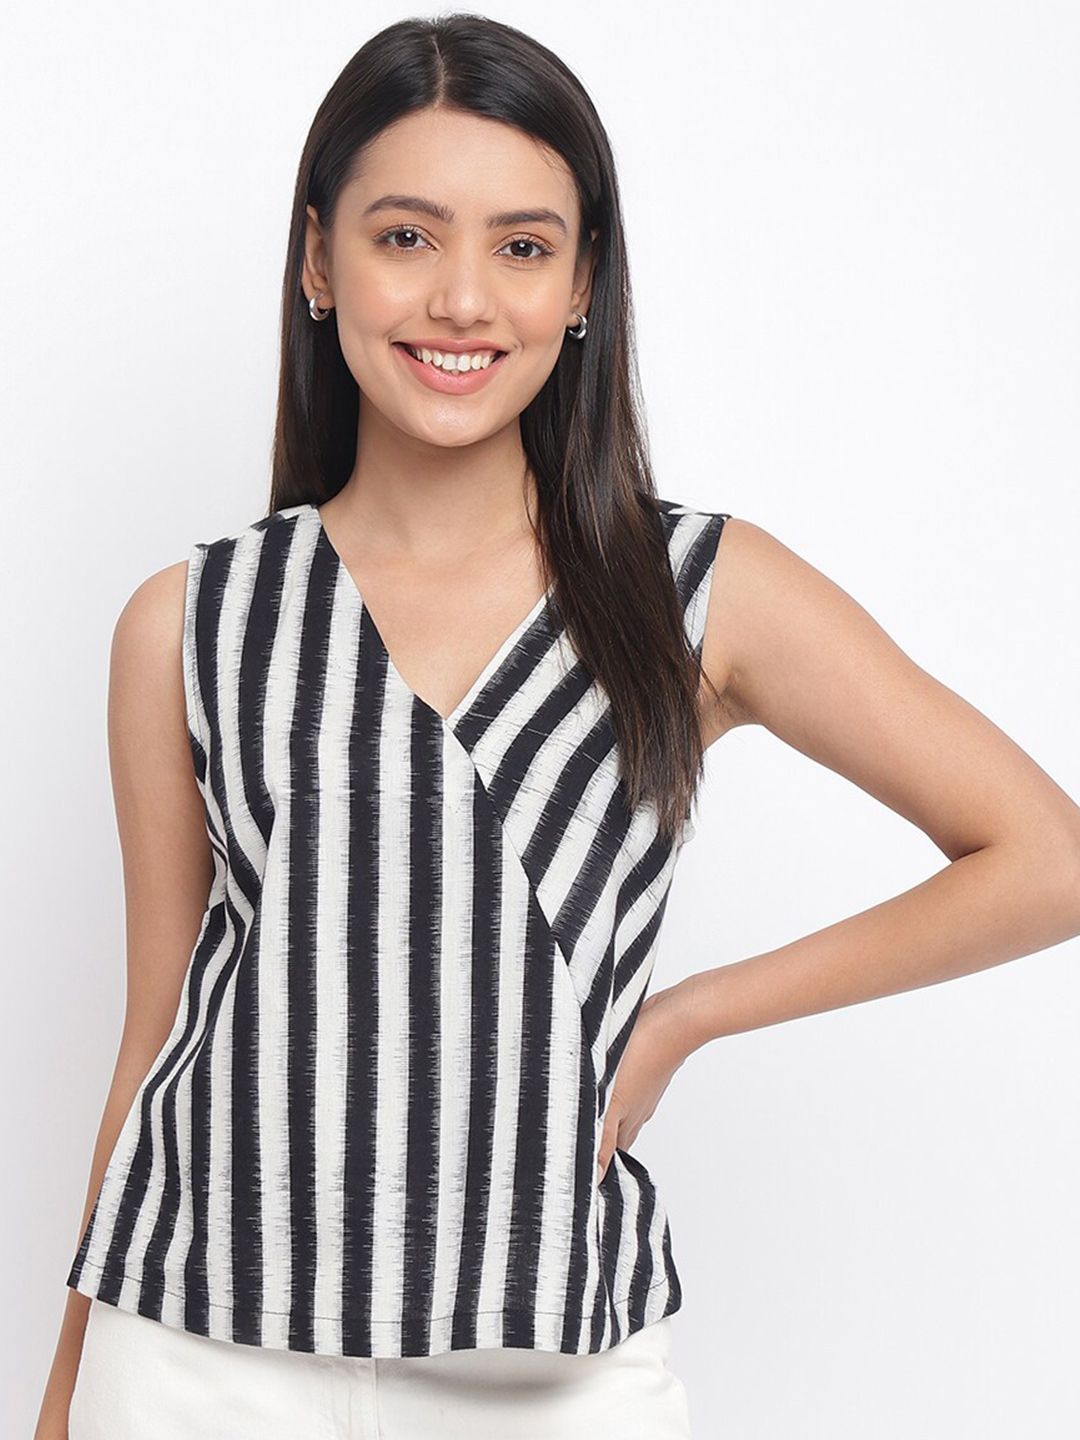 Fabindia White & Black Striped Ikat Cotton Monochrome Wrap Top Price in India